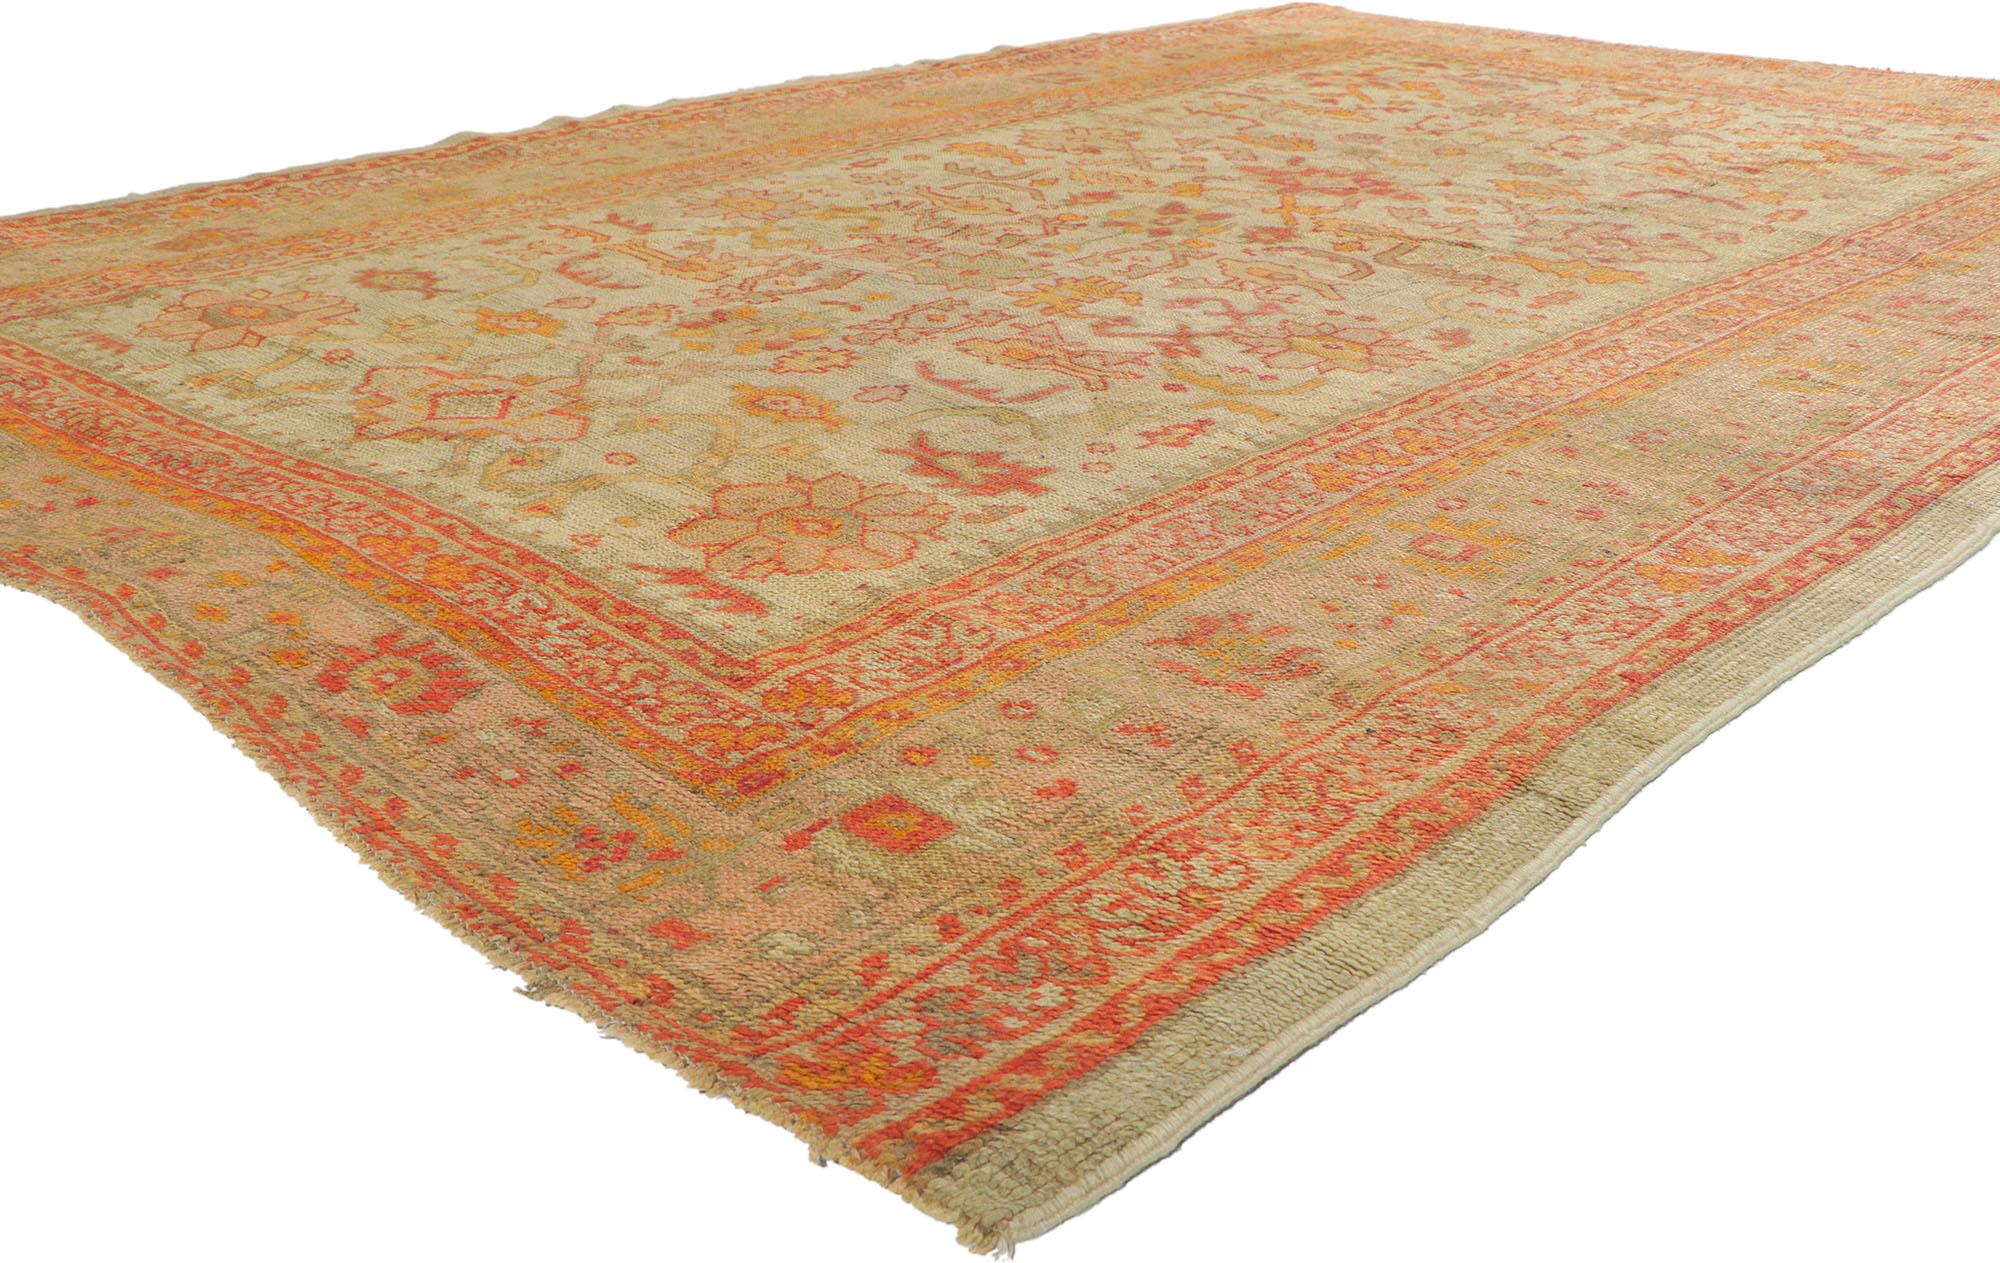 74181 Antique tapis turc Oushak à motif géométrique. Resplendissant d'éléments de design turcs traditionnels, ce tapis Oushak antique communique avec élégance certains des points les plus fins du design classique des tapis turcs. Ce tapis Oushak